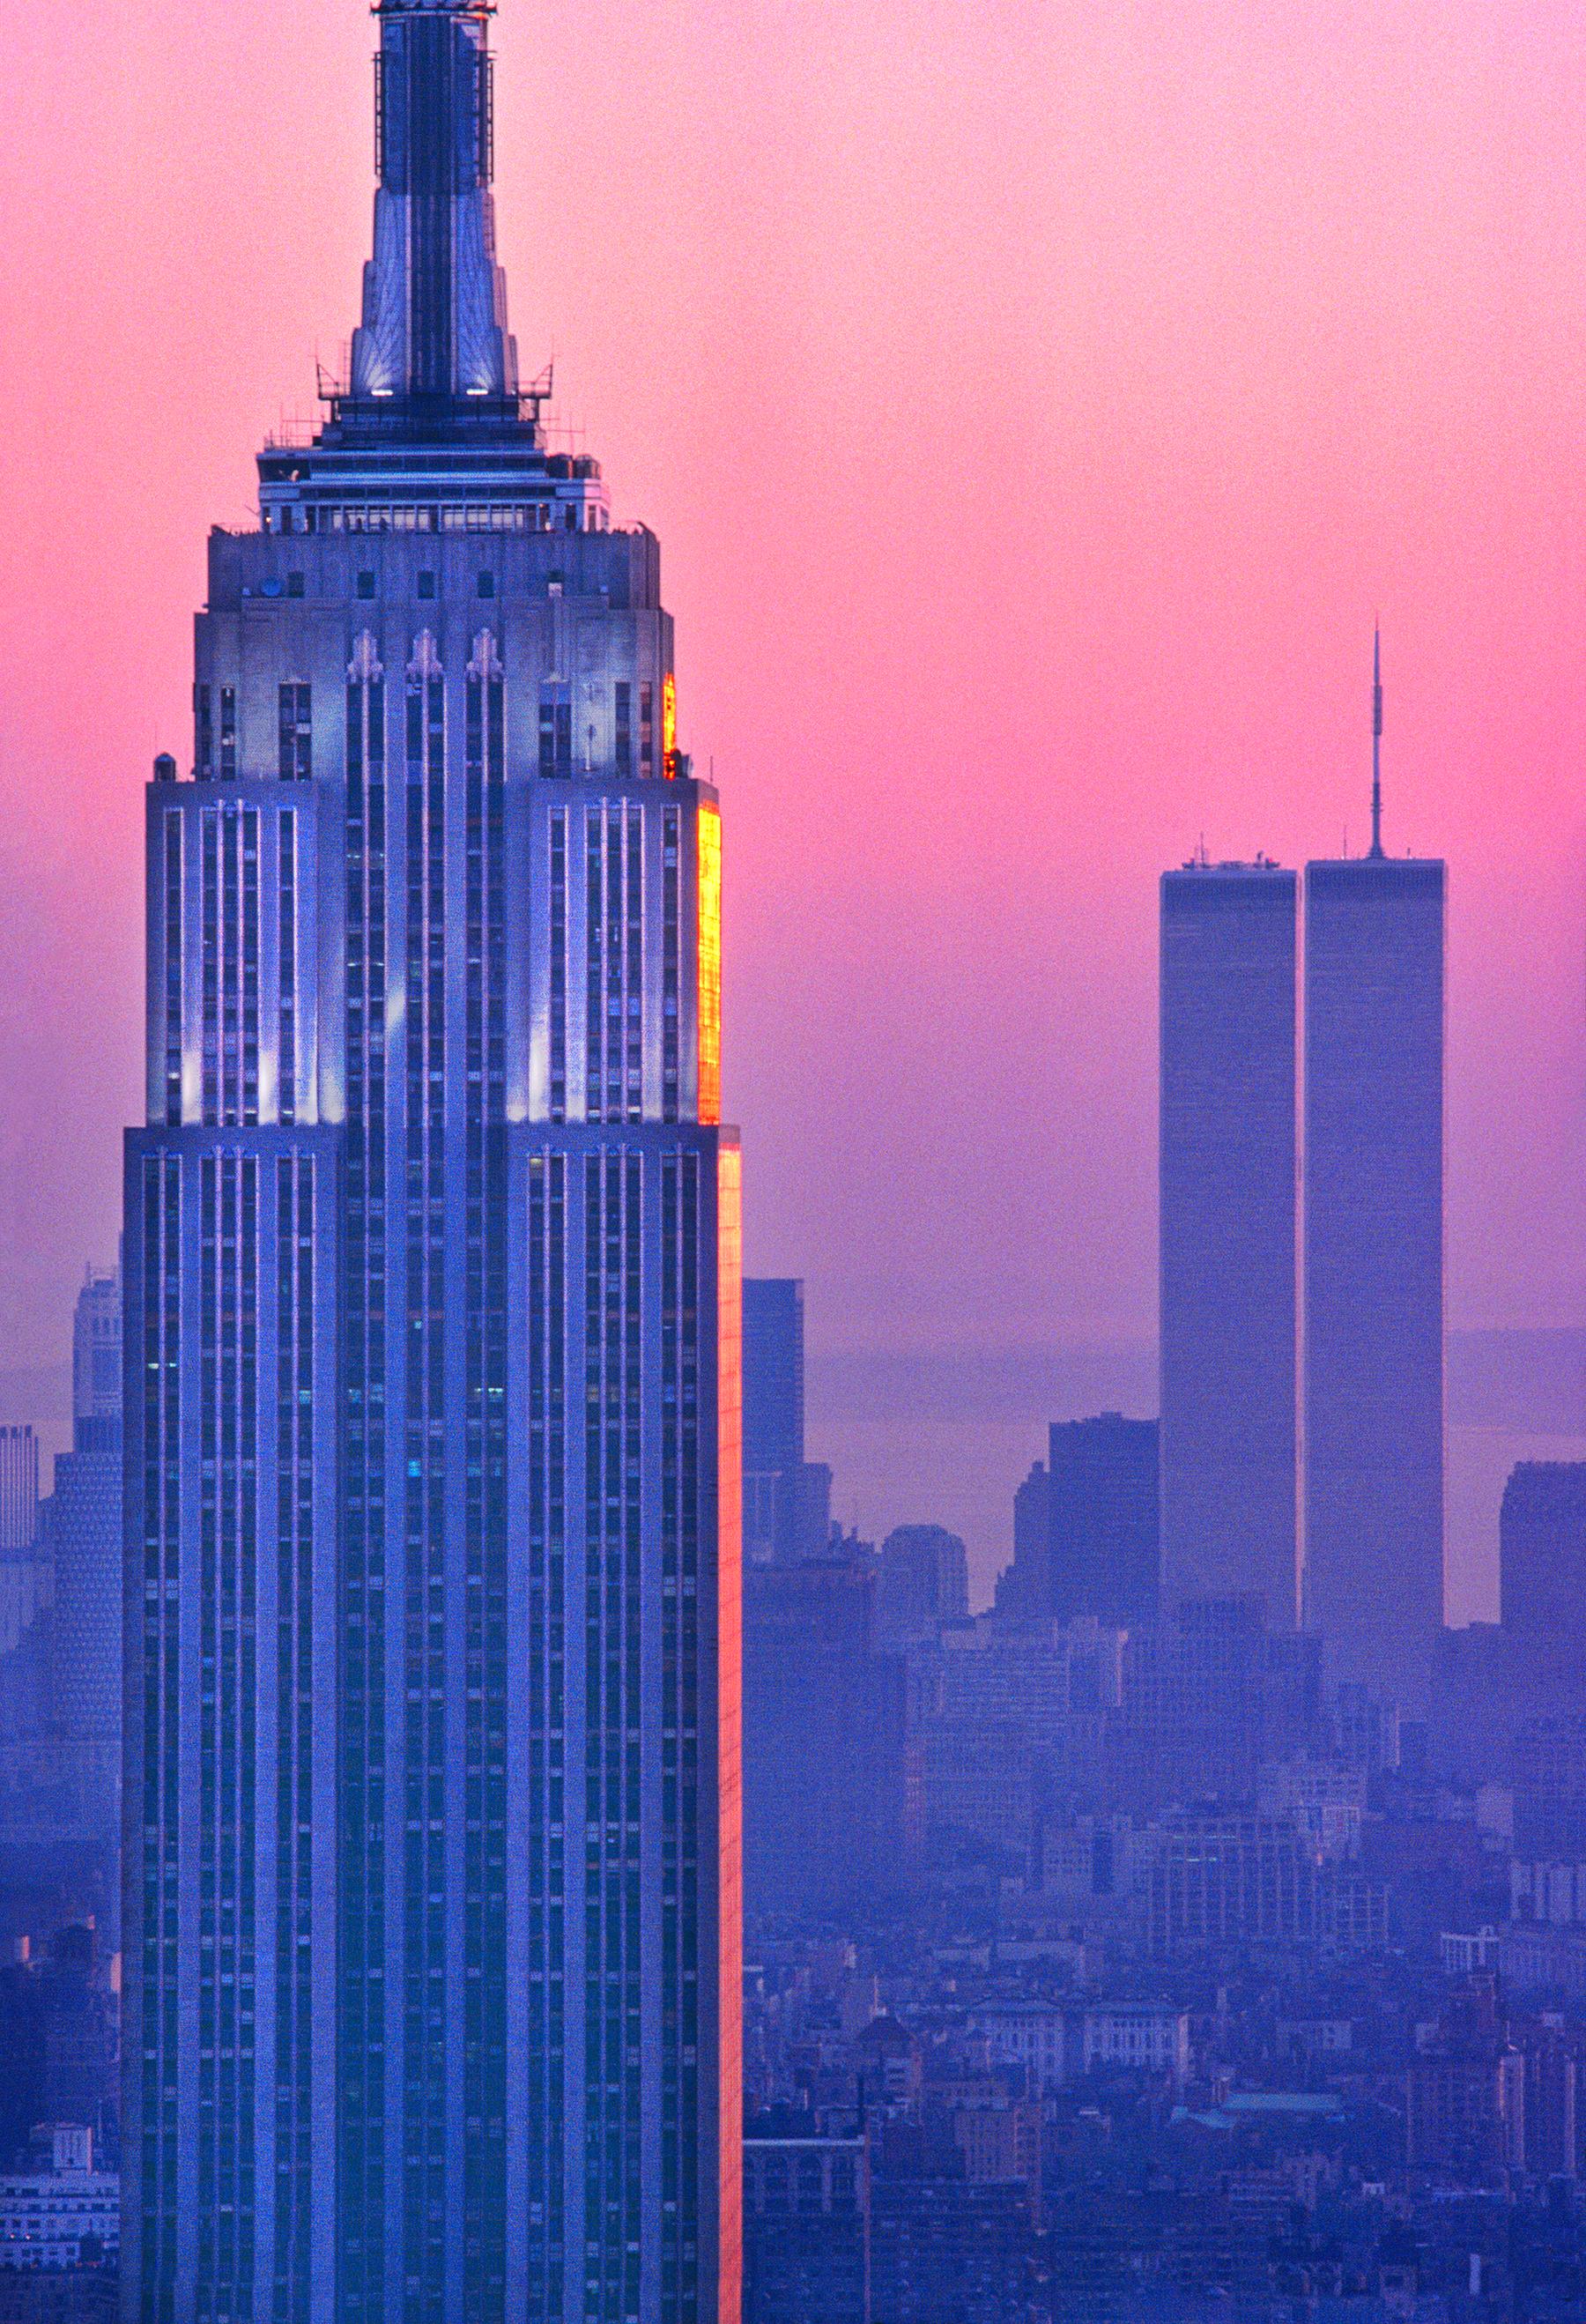 Zwei architektonische Ikonen von New York City werden vor einem magentafarbenen Himmel einander gegenübergestellt.  Das Empire State Building und die Zwillingstürme, aufgenommen vor einem Bauboom in Manhattan, bieten einen klaren und ungetrübten